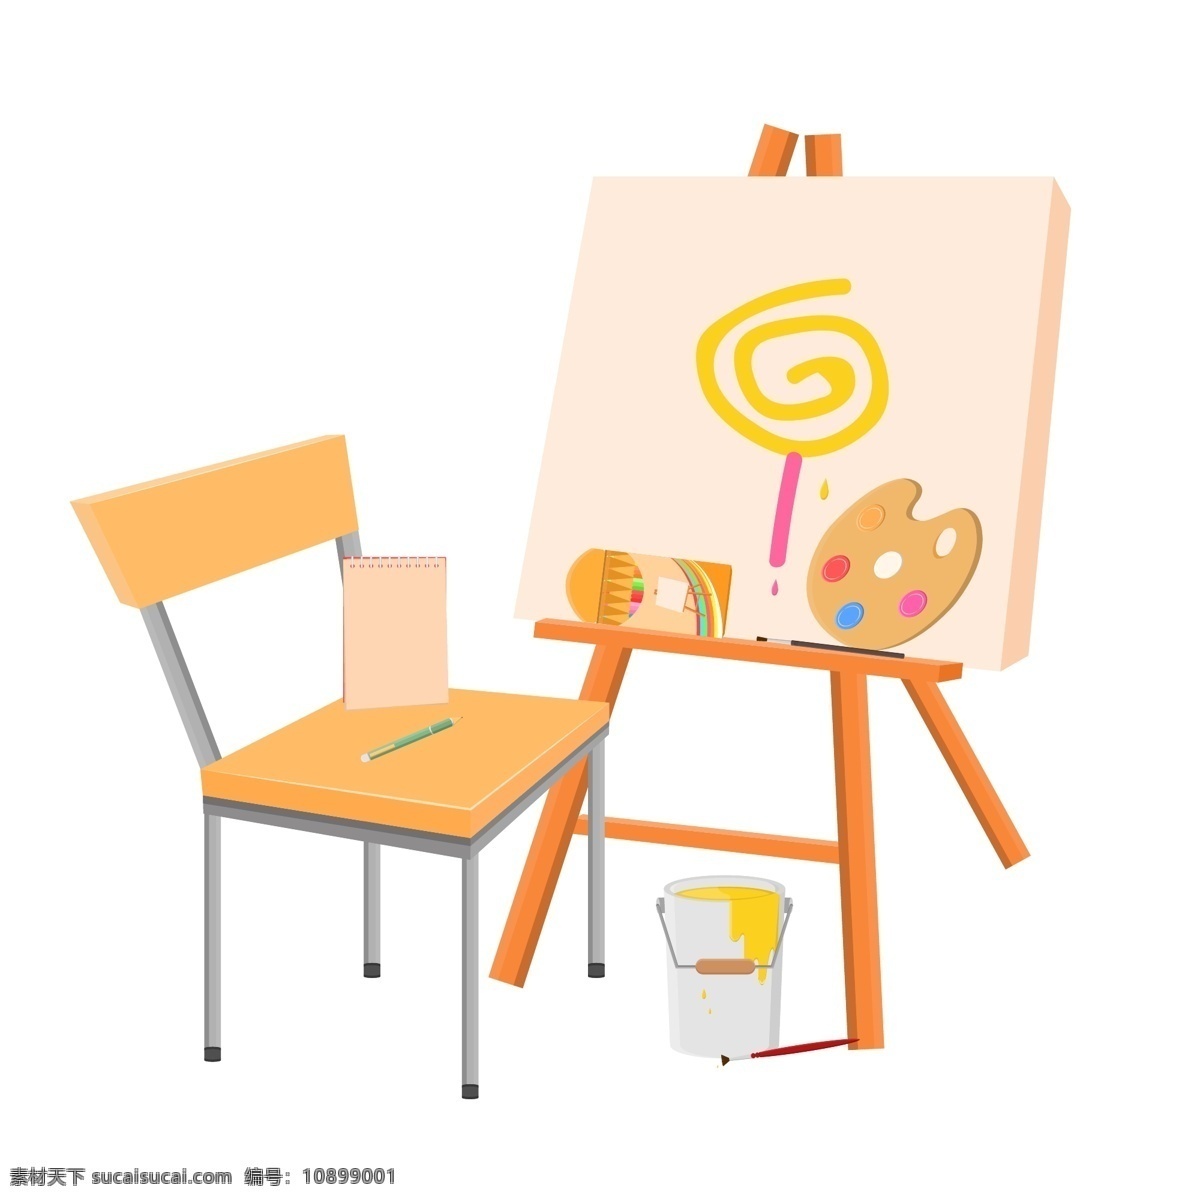 手绘 矢量 美术 画画 东西 画架 椅子 调色盘 画笔 水桶 本子 铅笔 彩铅 笔刷 美术生